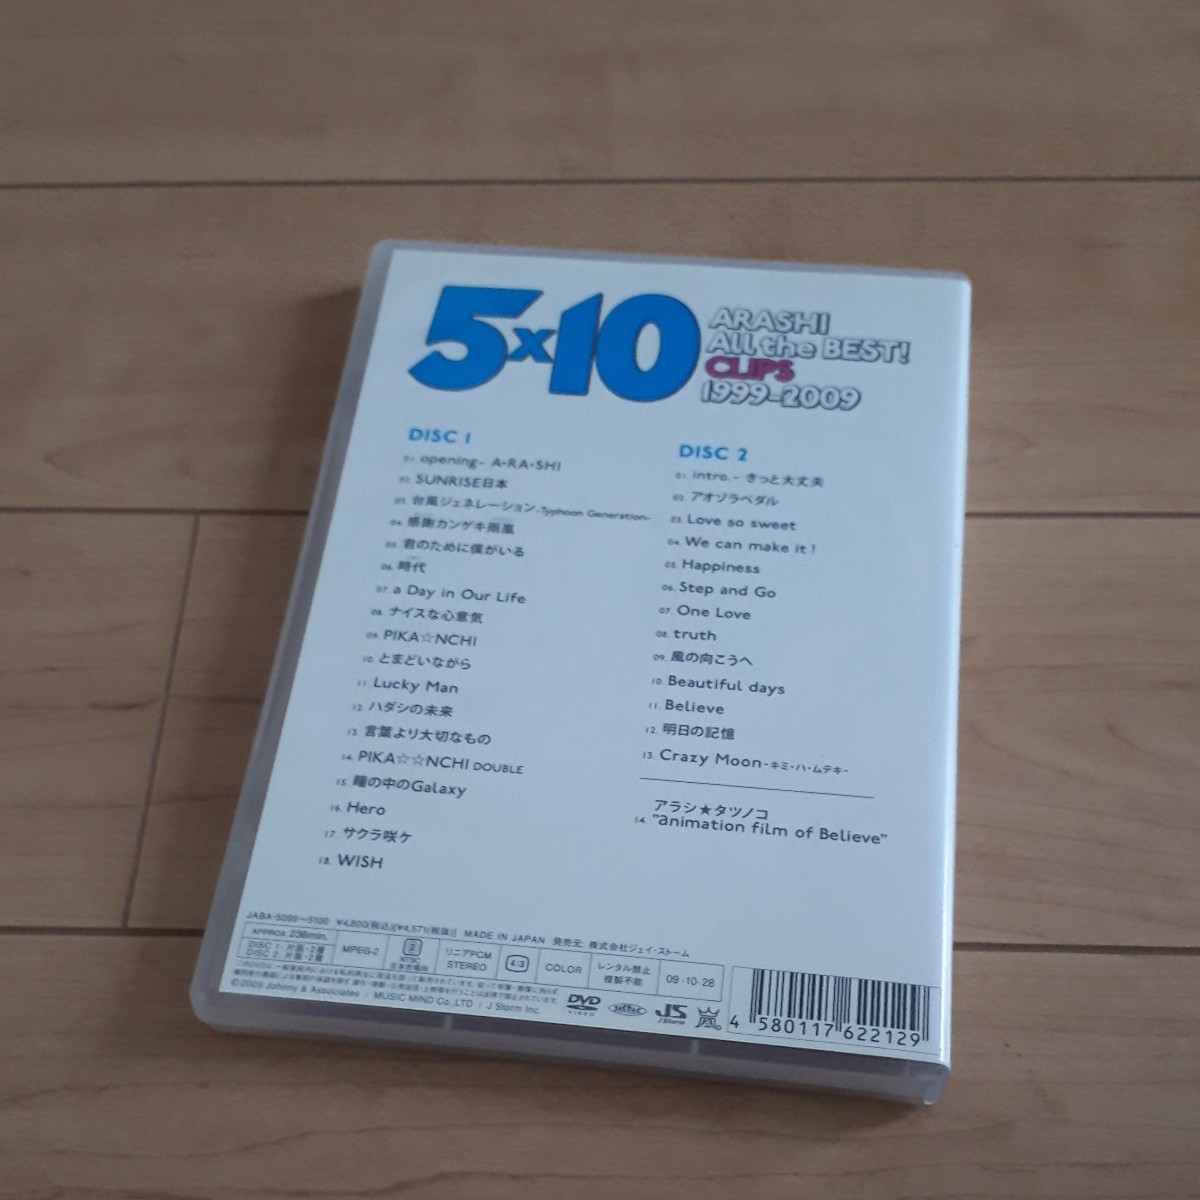 DVD2枚組 嵐 ARASHI 5×10 All the BEST! CLIPS 1999-2009 ベスト盤 クリップ集 A-RA-SHI 32曲 236分収録_画像2